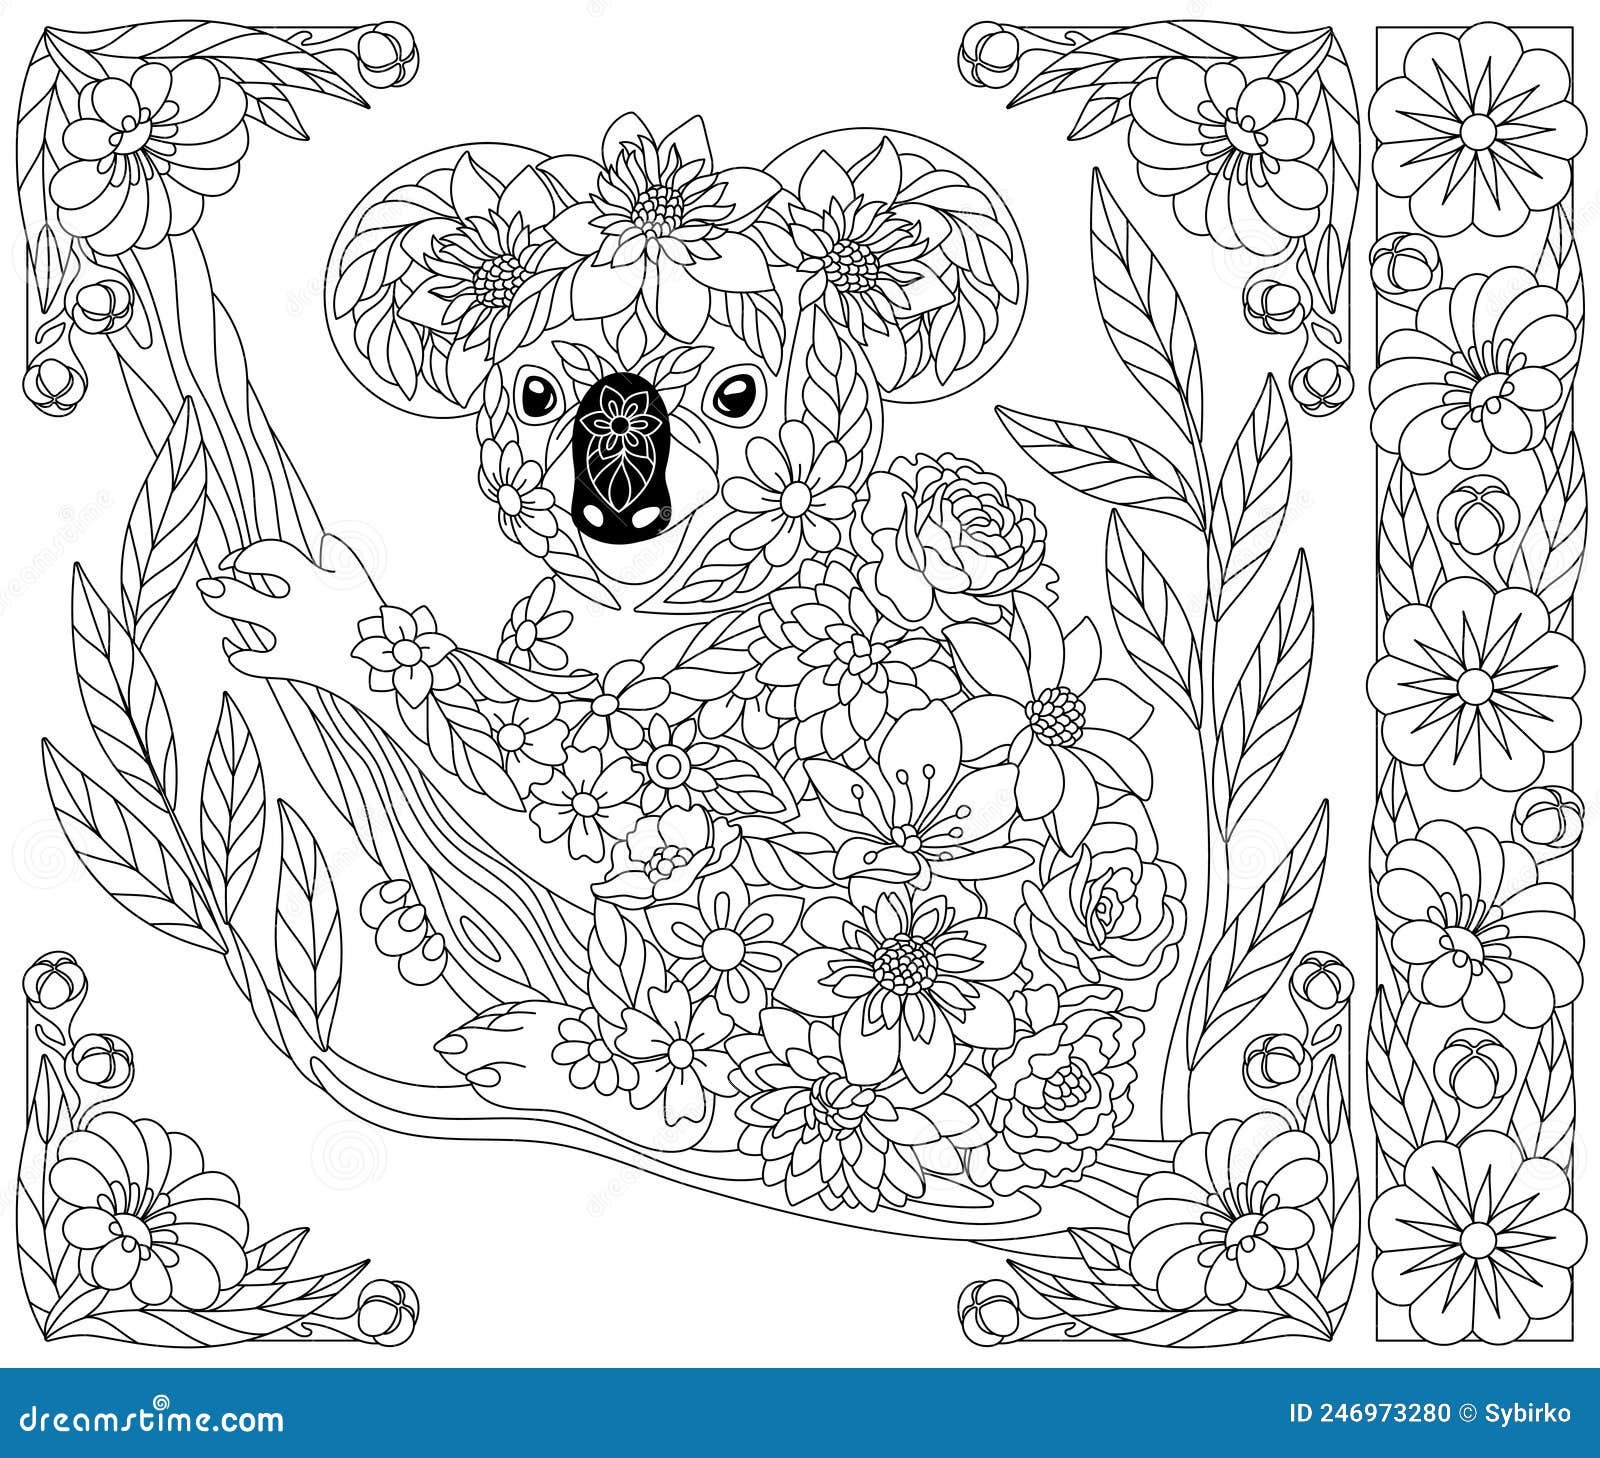 Floral koala bear coloring book page stock vector